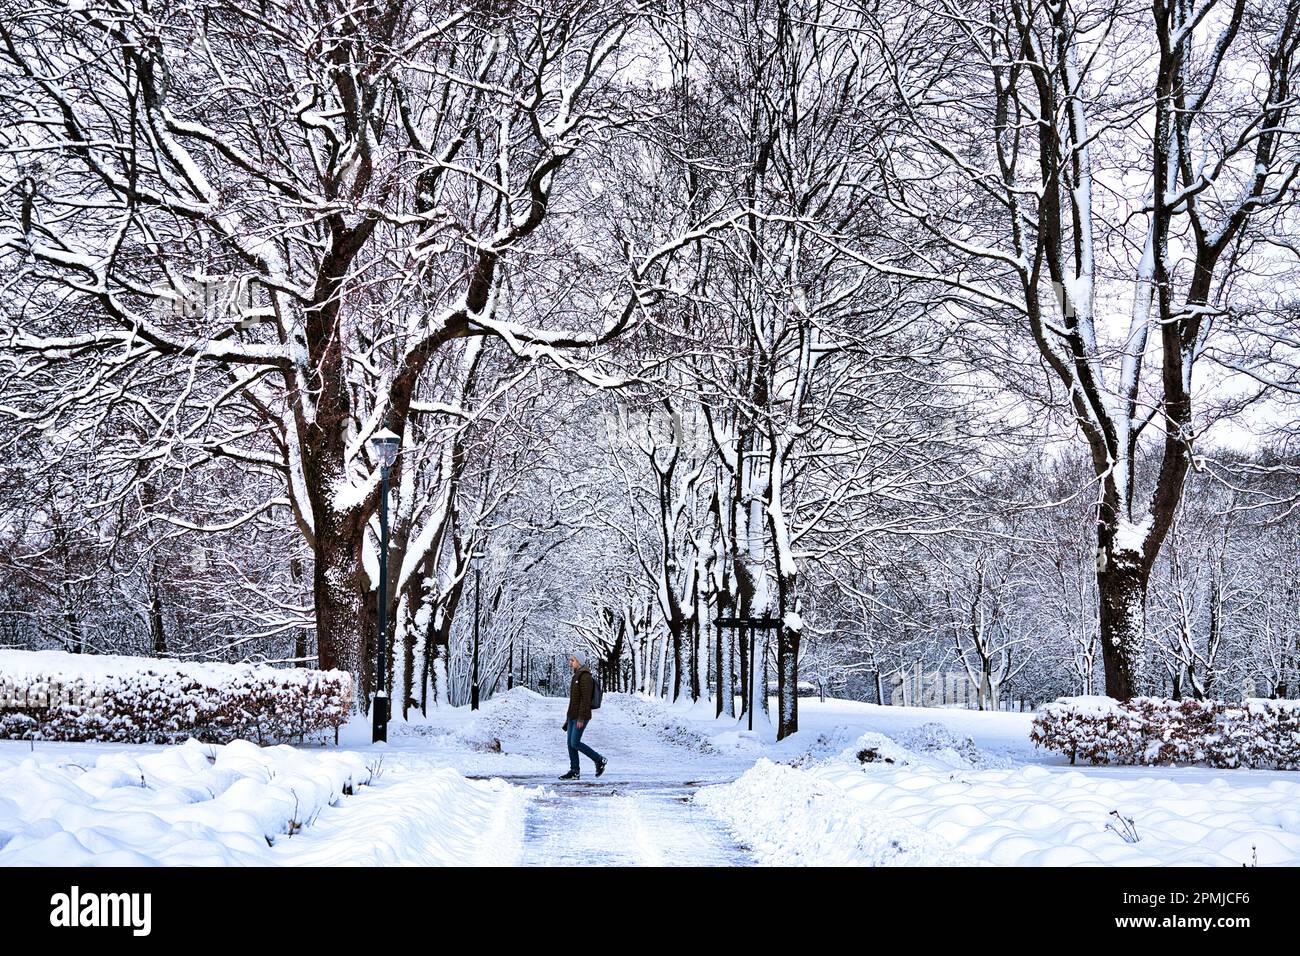 Vigeland Sculpture Park, Oslo, Norvège - une personne marchant devant une avenue d'arbres couverts de neige pendant l'hiver Banque D'Images